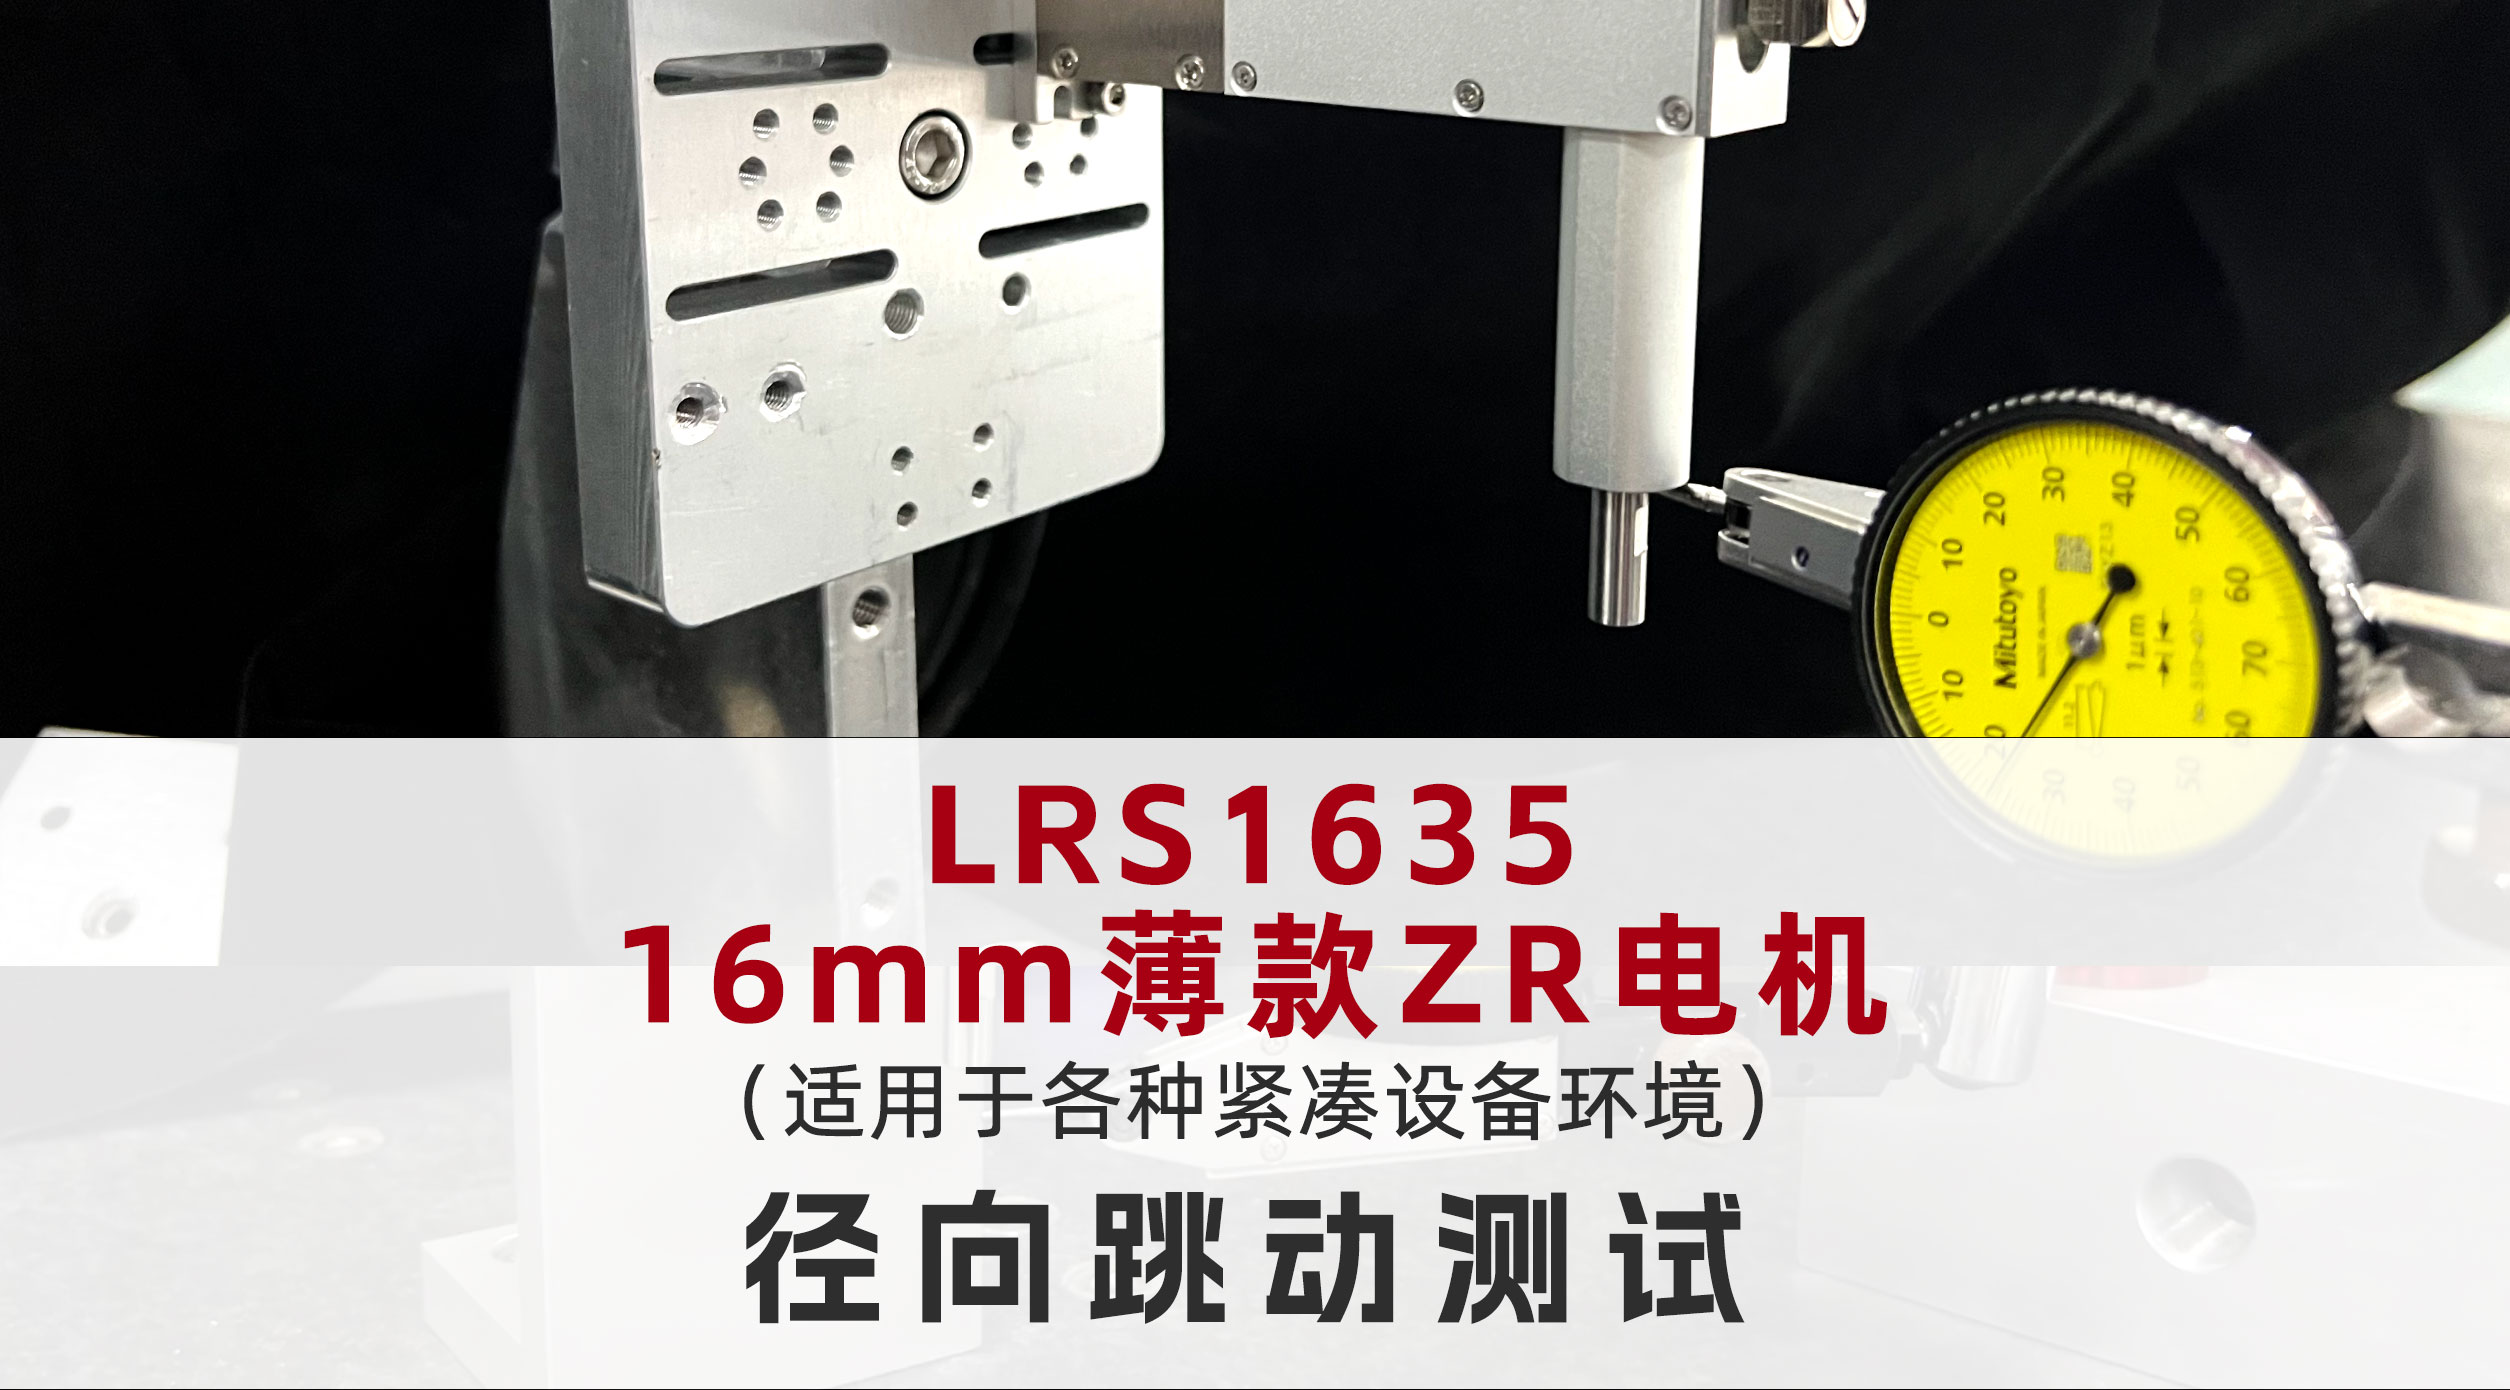 16mm薄款ZR电机径向跳动±1 μm，确保高精度定位
#薄款ZR电机 #ZR执行器 #国奥科技电机 